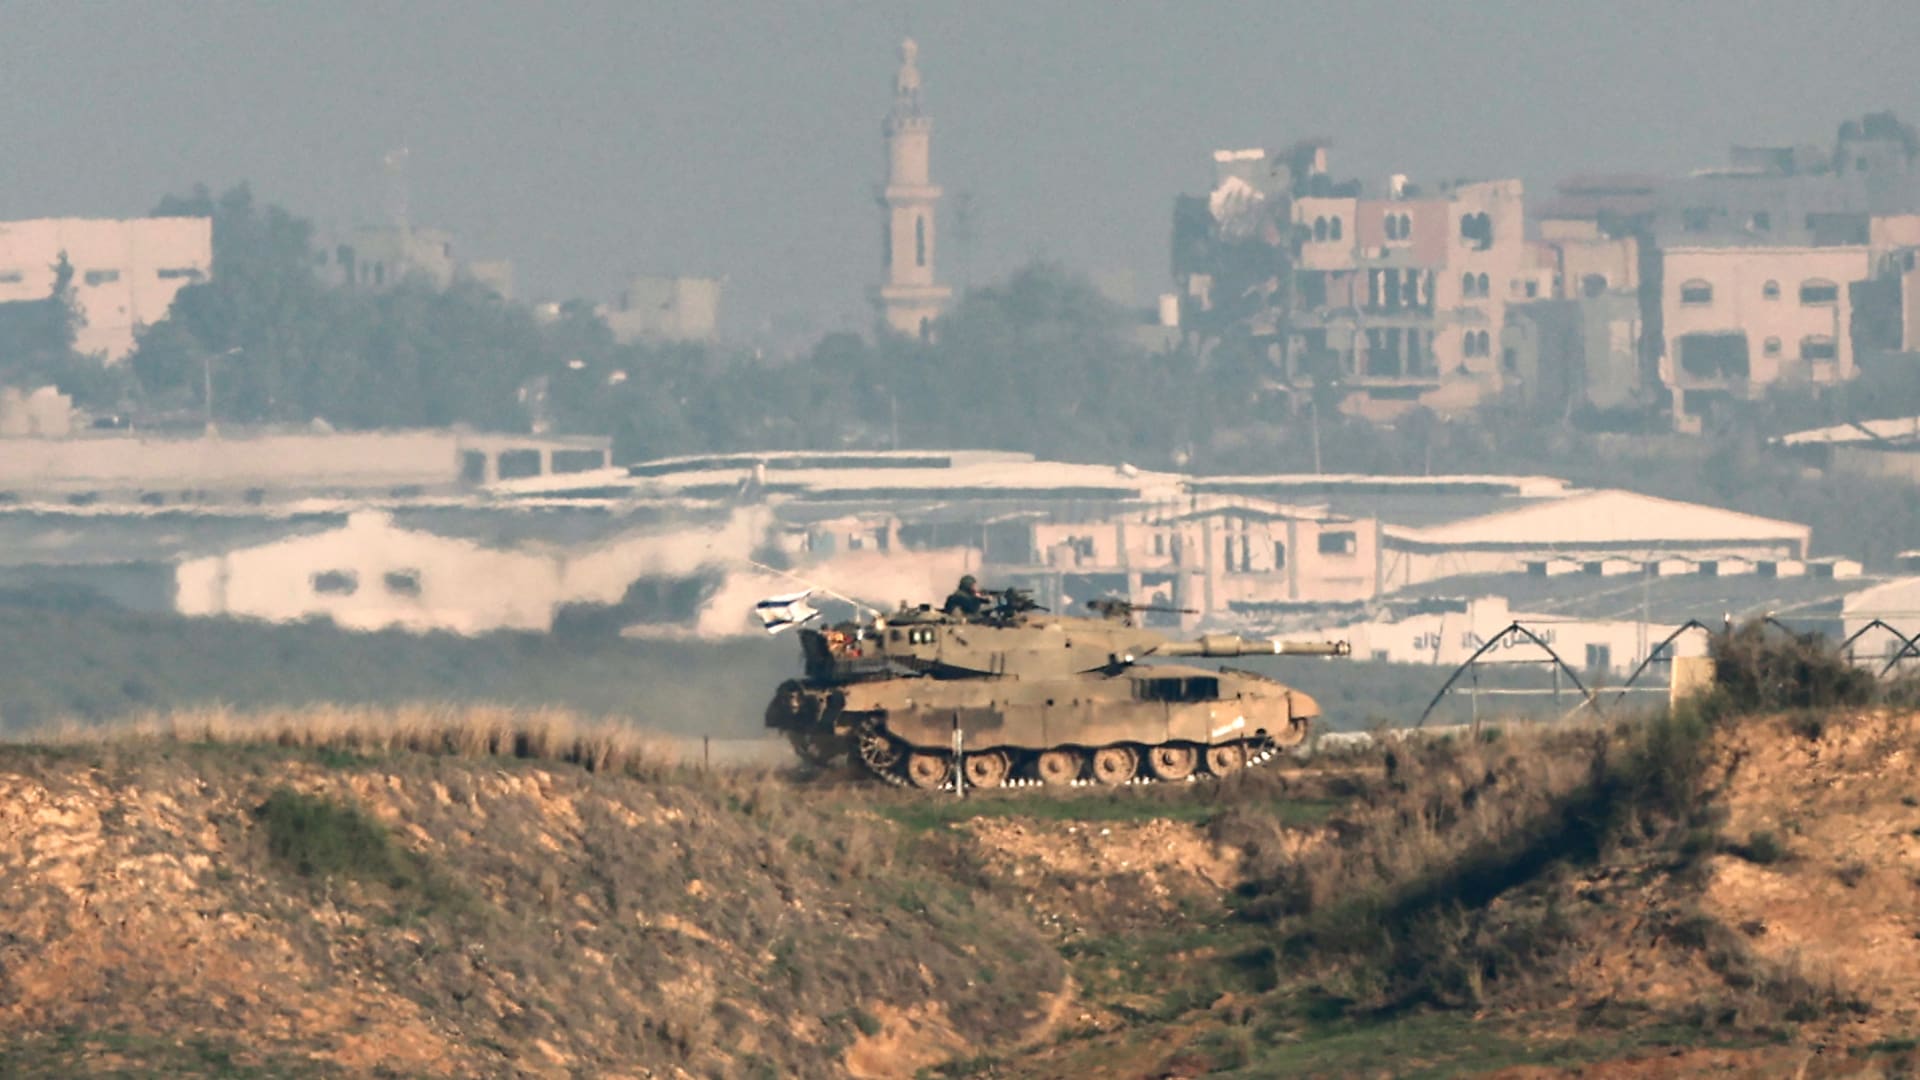 دمار وفوضى "هذا هو نصيب غزة".. والبنية التحتية في حالة انهيار مع استمرار الغارات الإسرائيلية